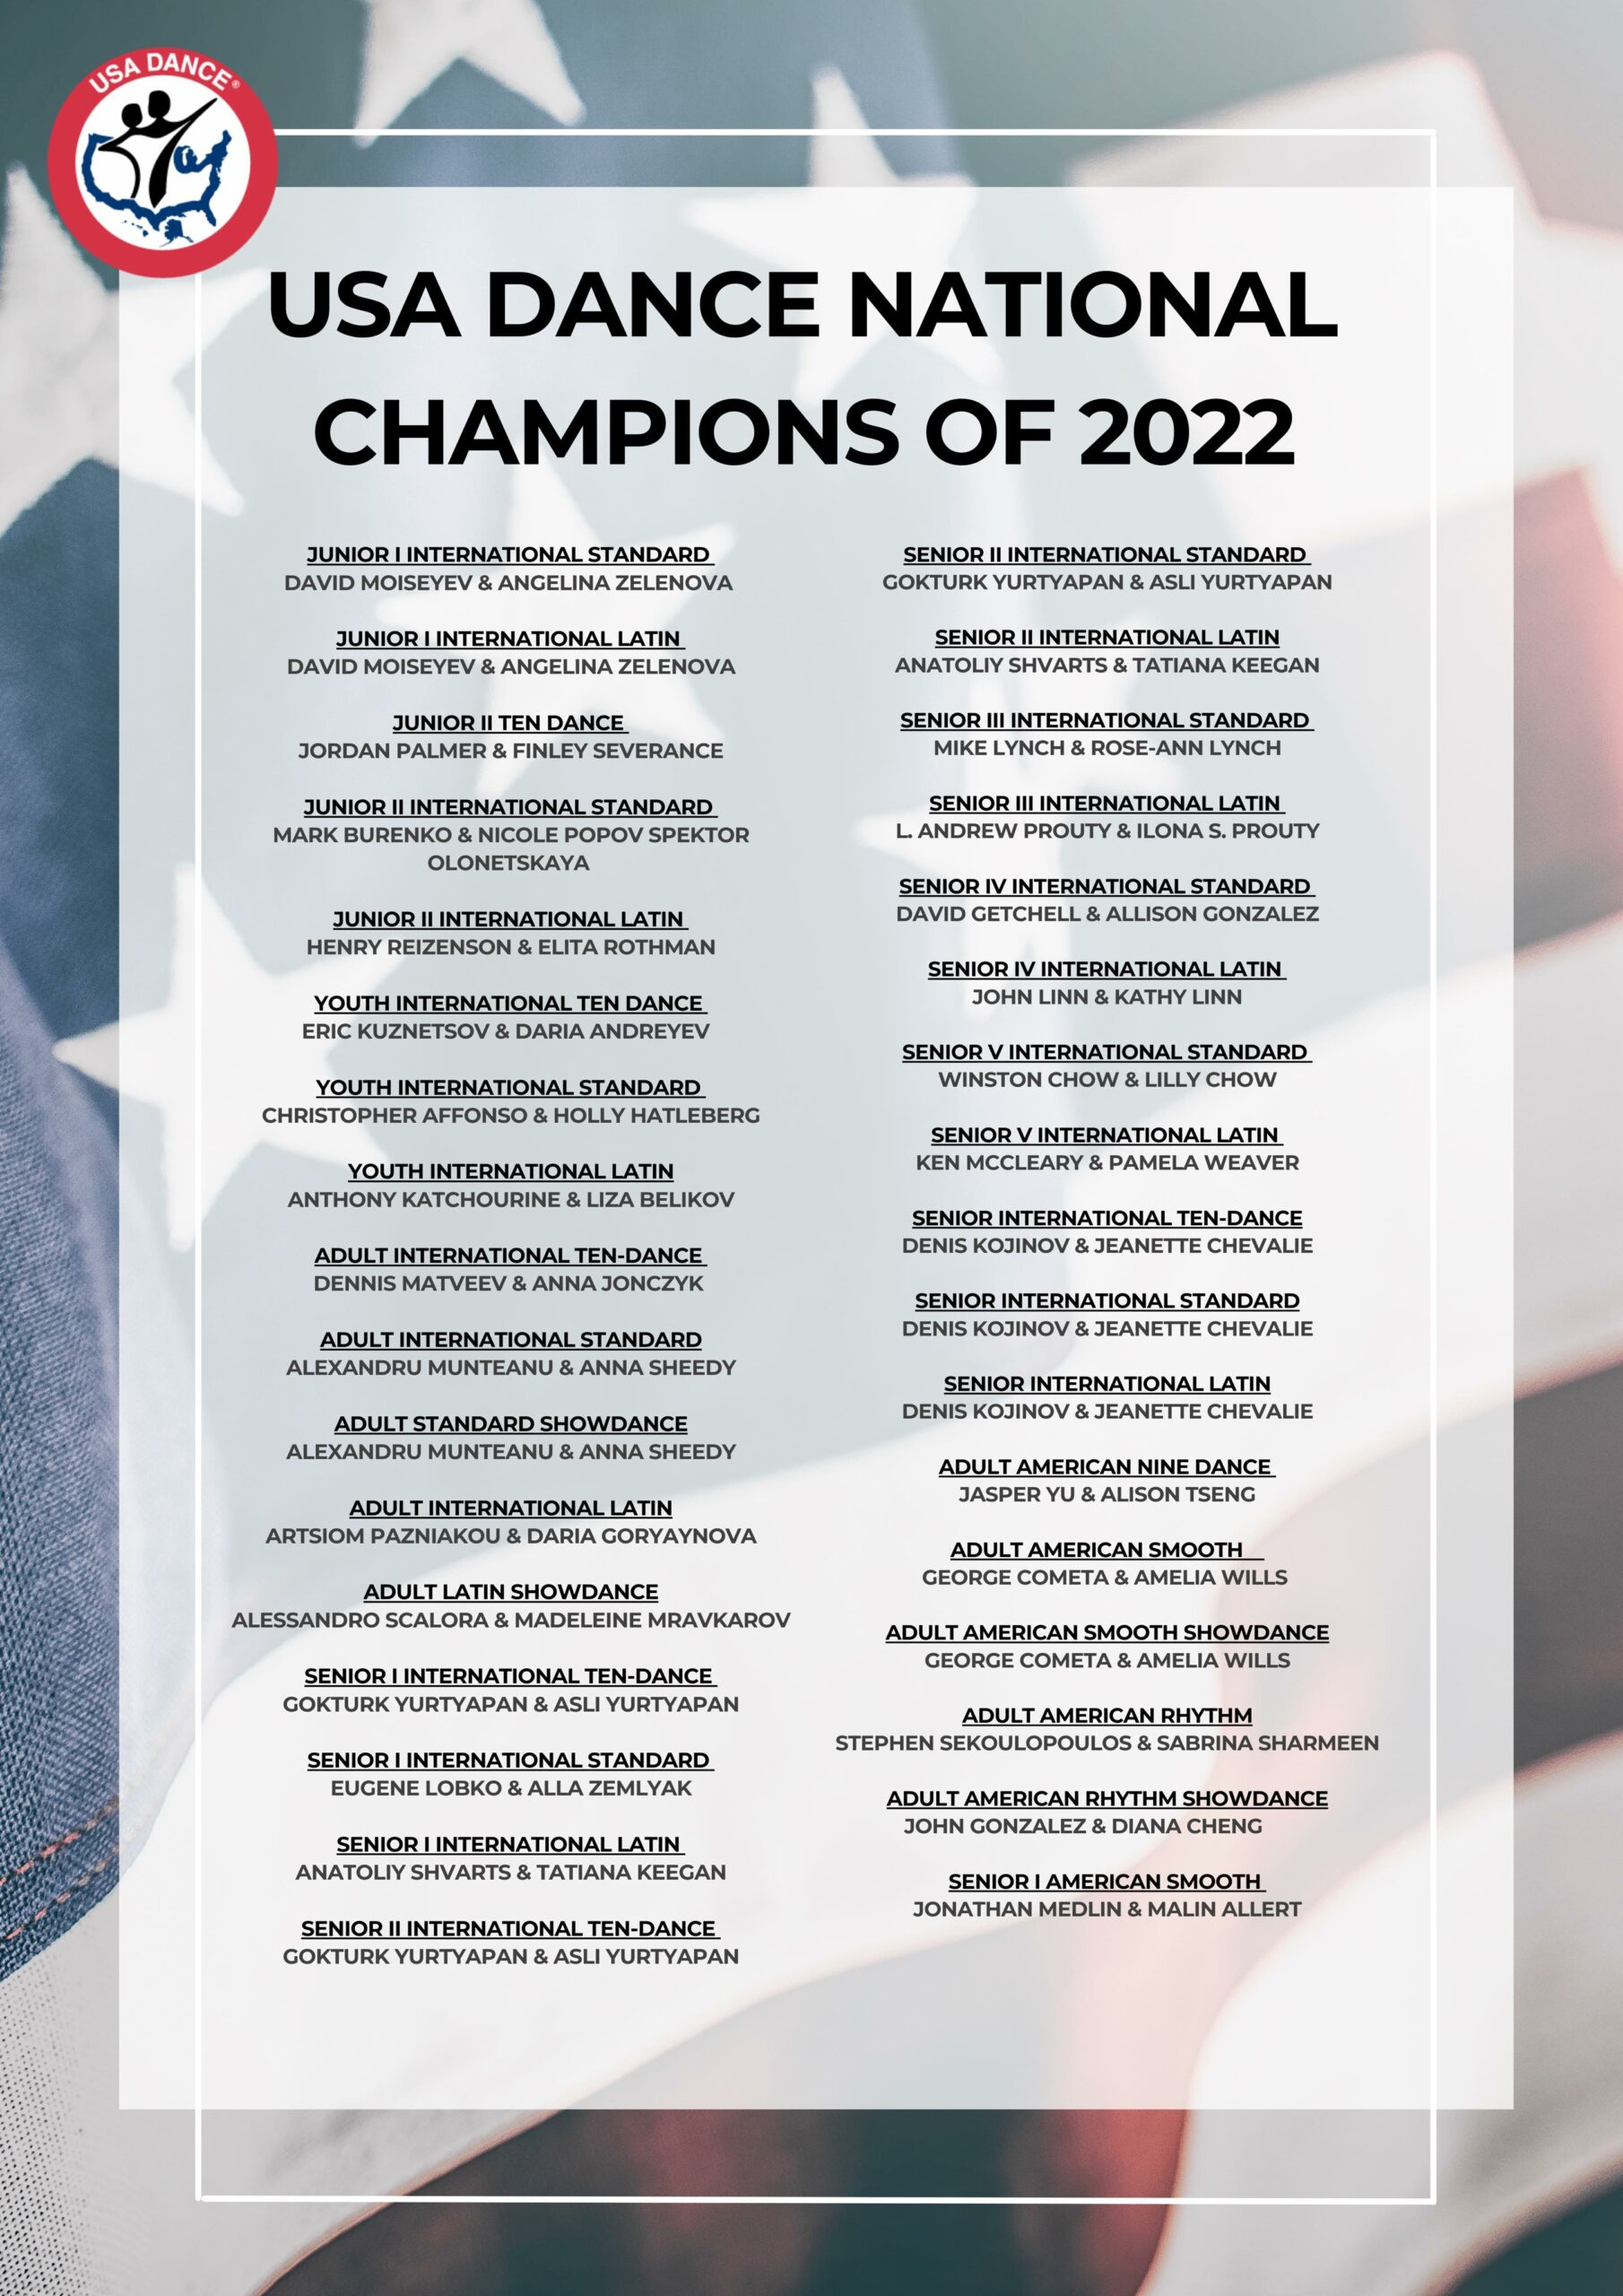 2022 USA Dance National Champions